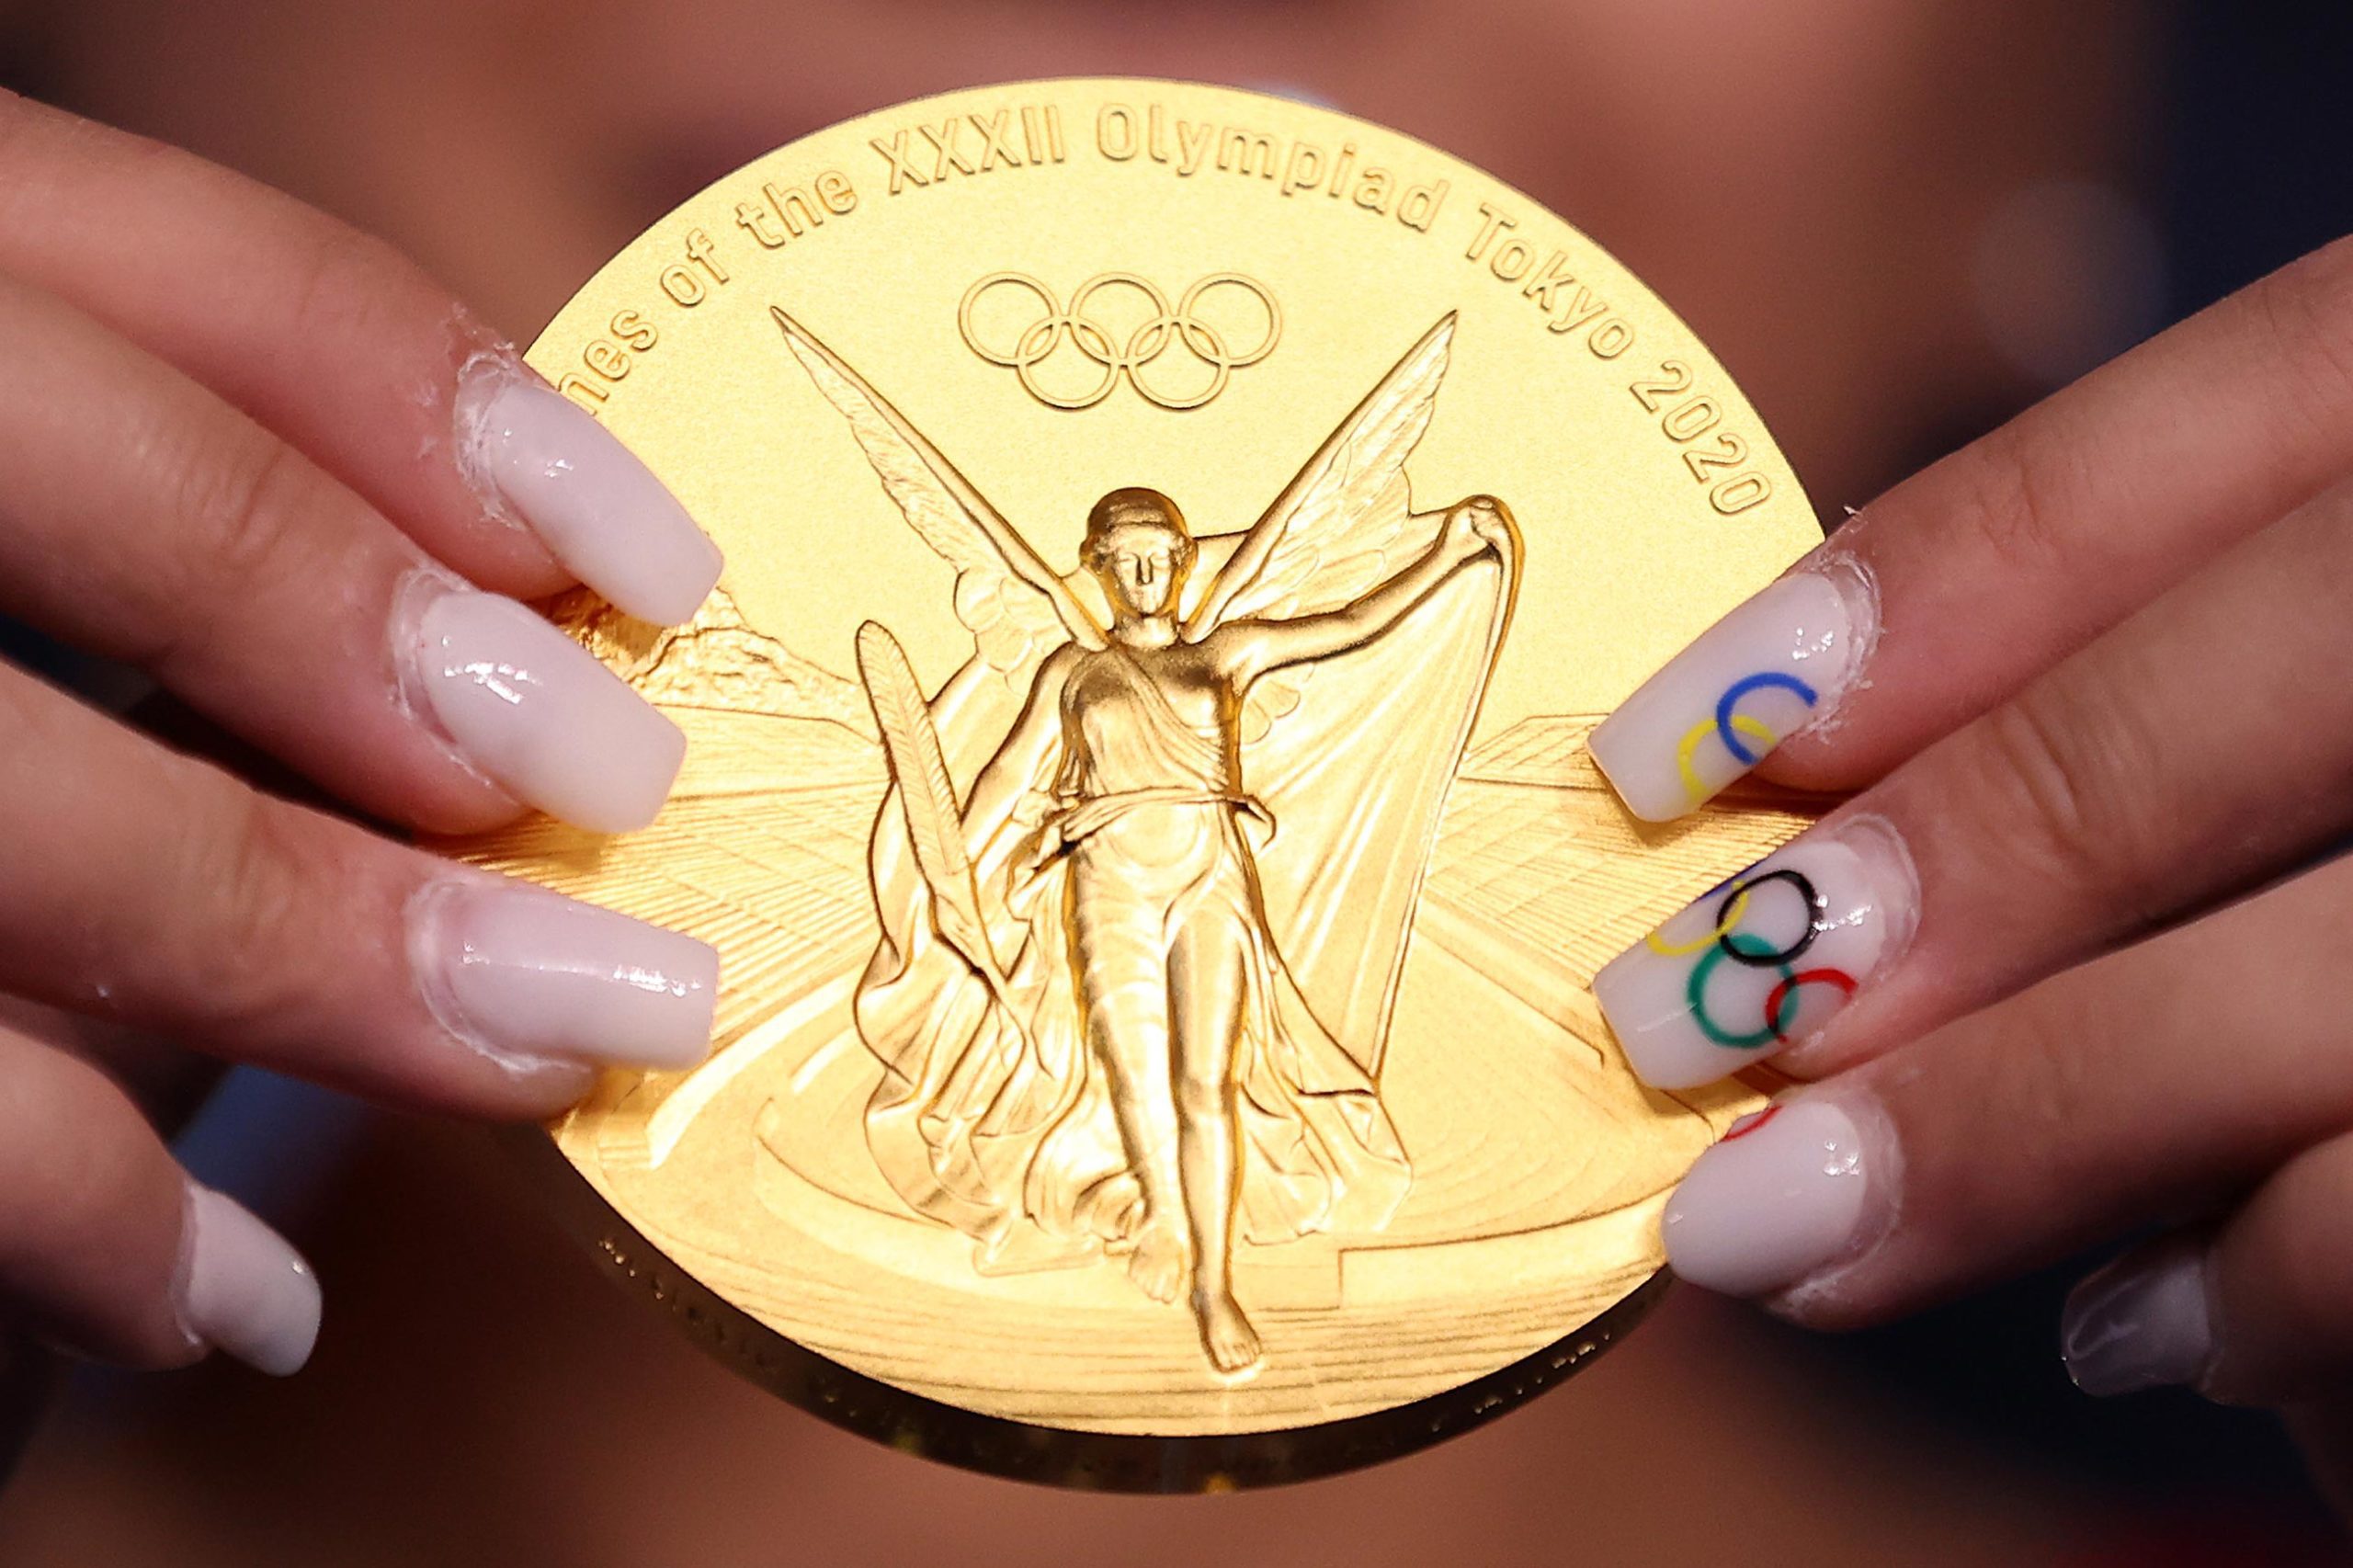 Суніса Лі зі збірної США зі своєю золотою медаллю після перемоги в фіналі жіночого багатоборства / Токіо, Японія, 29 липня 2021